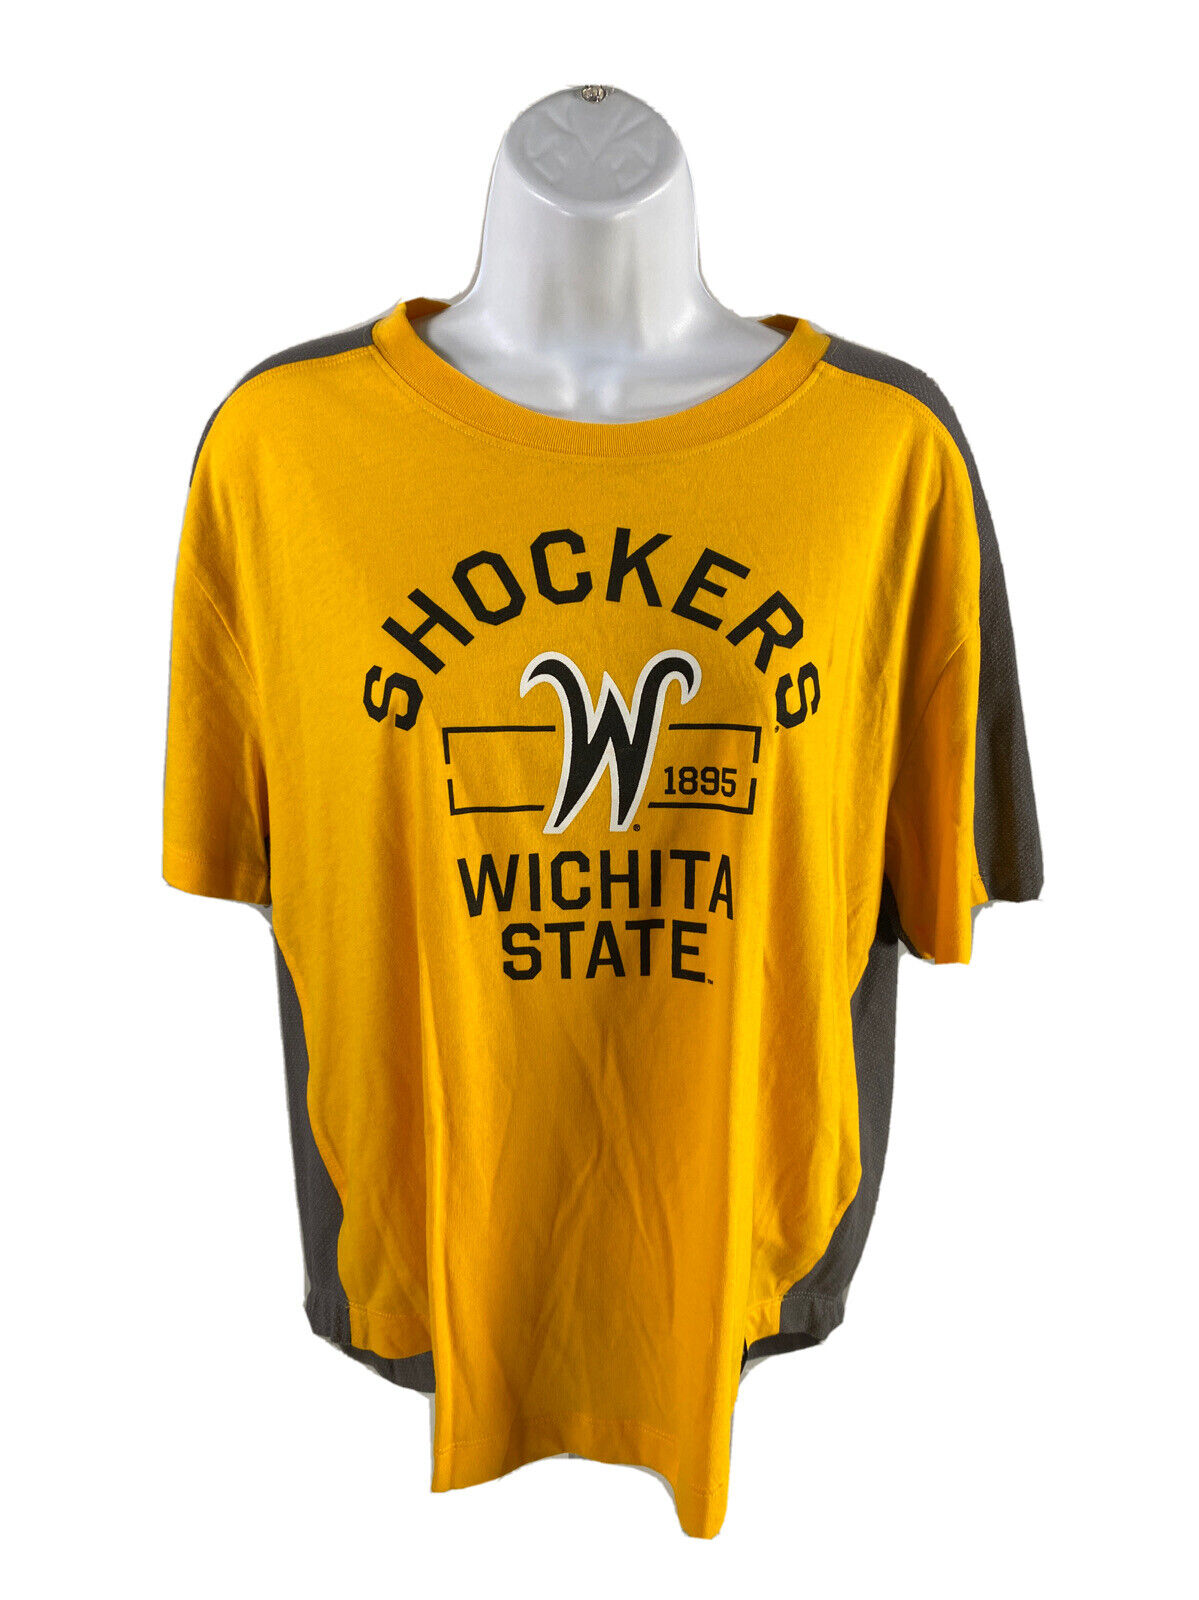 NEW Under Armour Women's Yellow Wichita Shockers Short Sleeve T-Shirt  -M